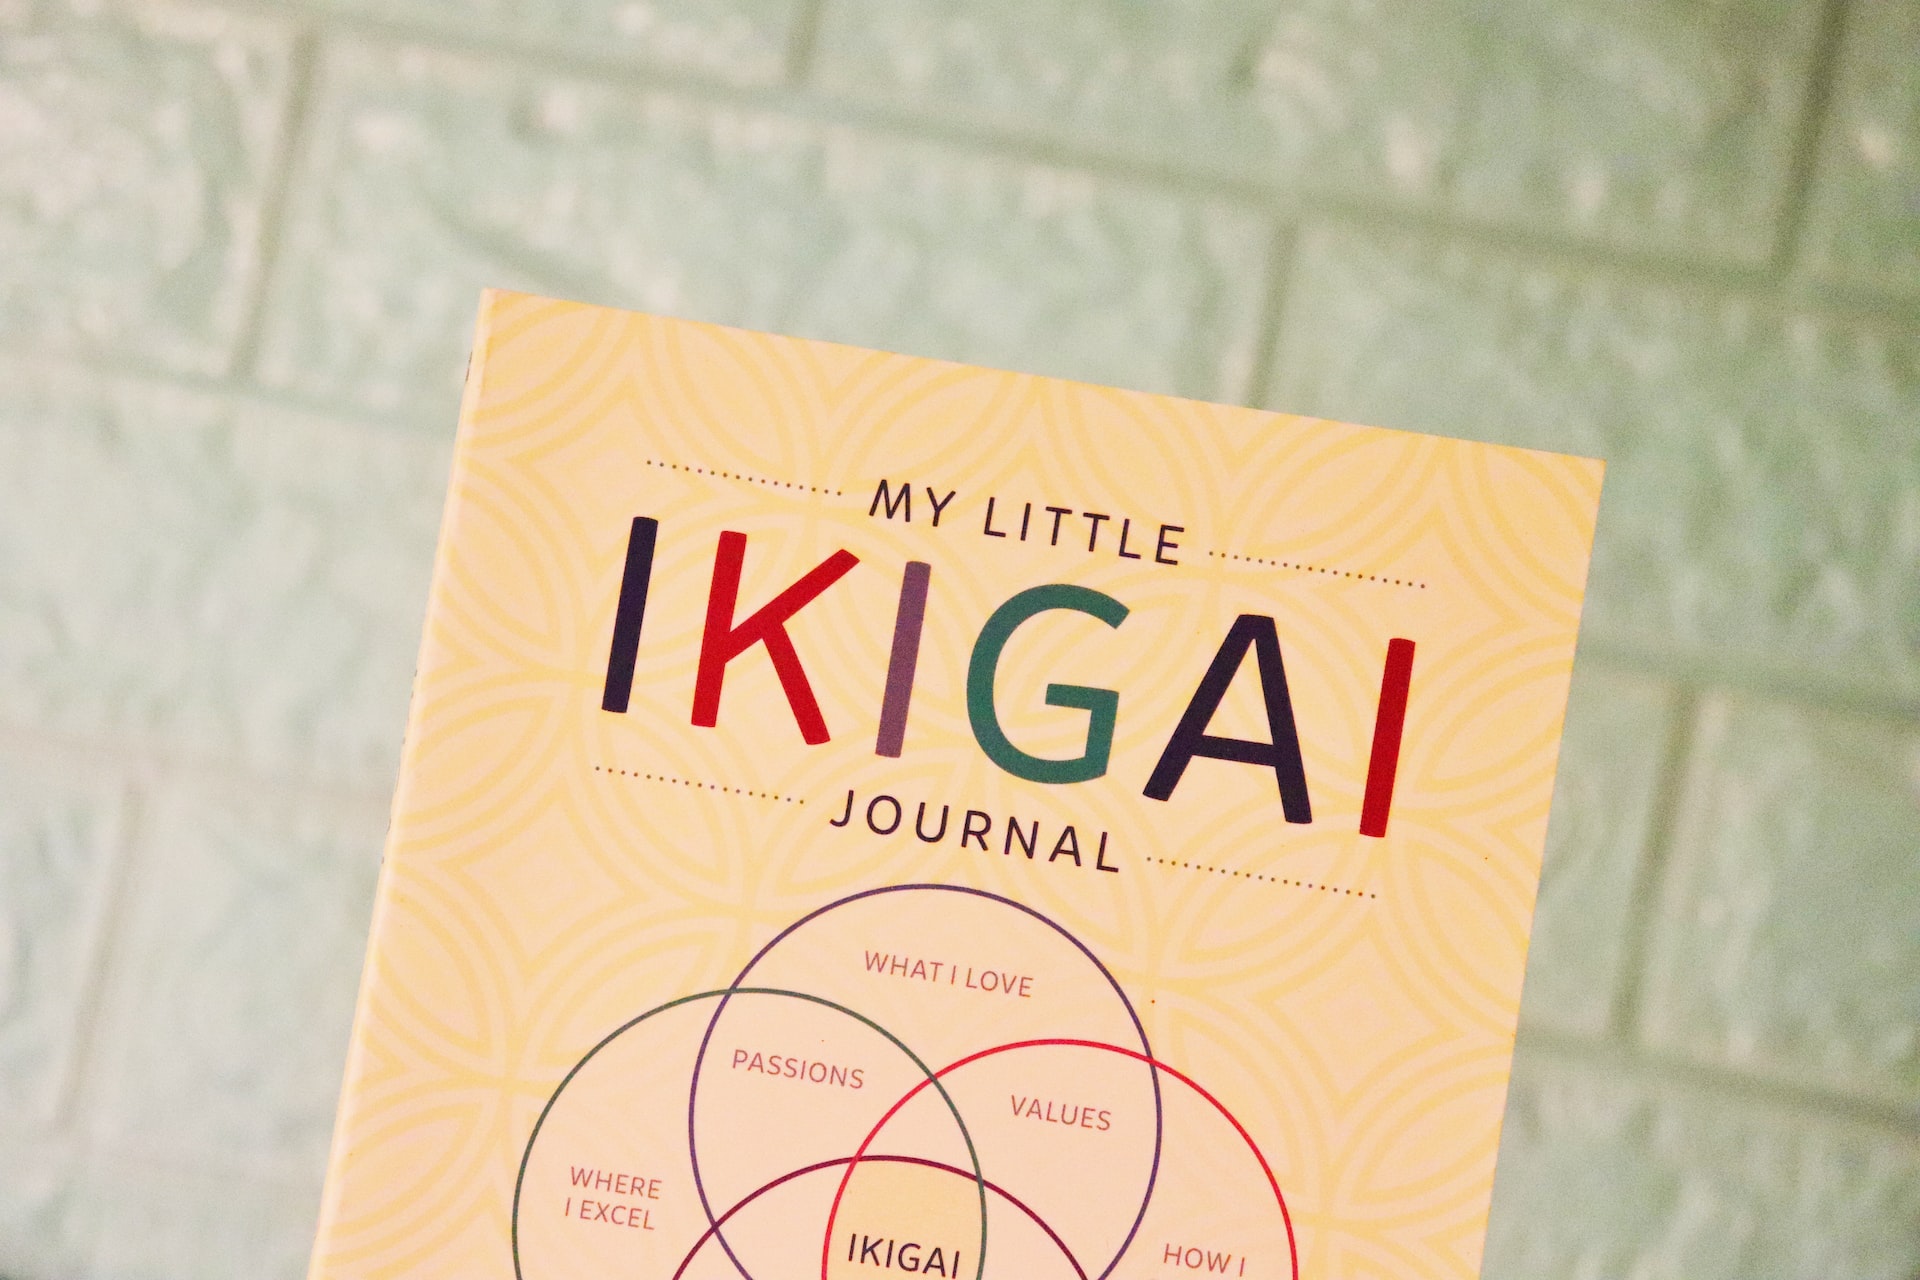 Mengenal Ikigai, Filosofi Jepang untuk Menjalani Hidup dengan Lebih Bahagia